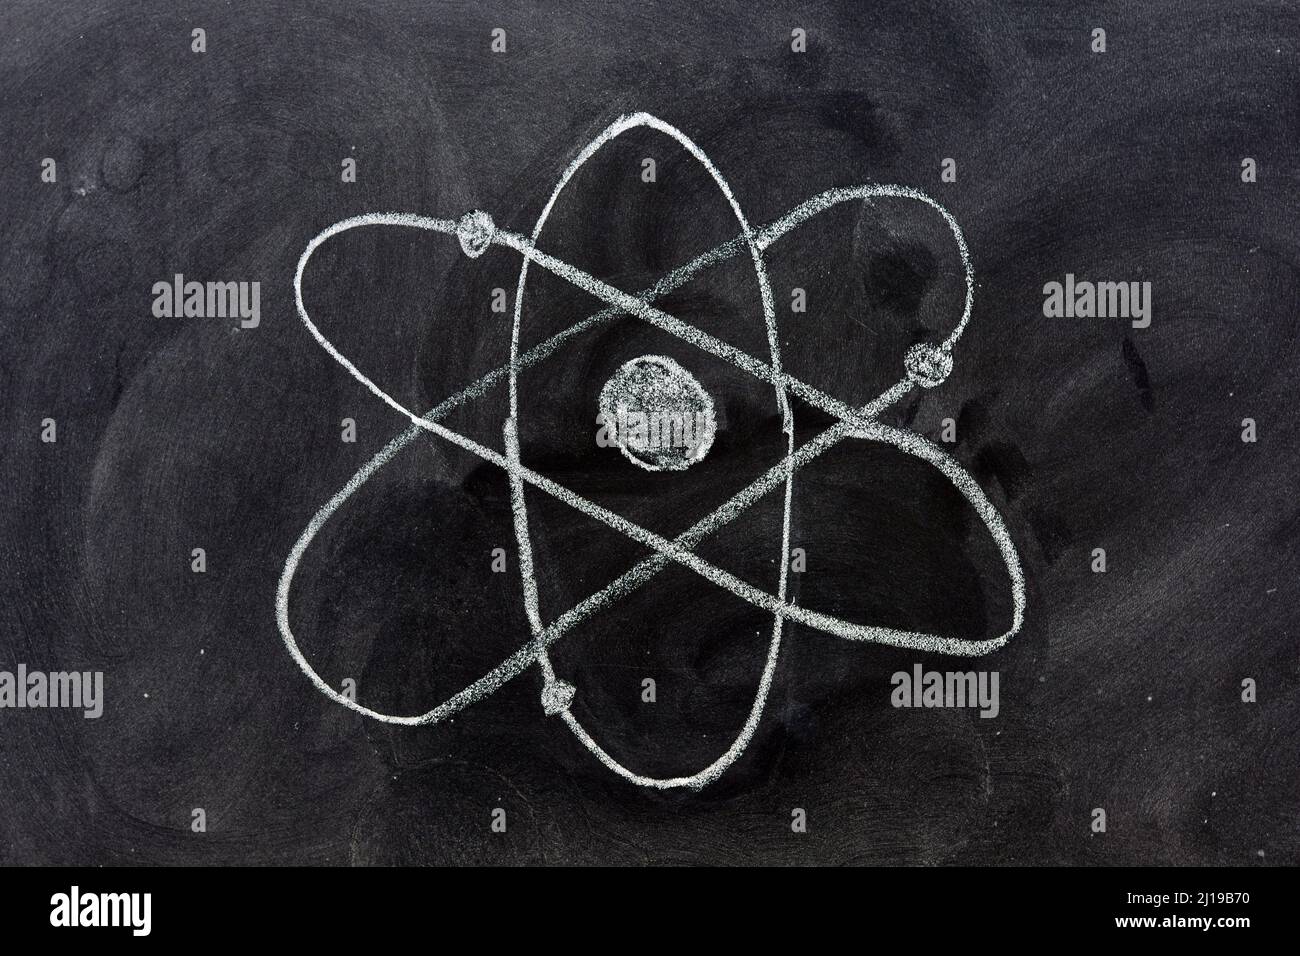 Símbolo del átomo dibujado con tiza en una pizarra Stock Photo